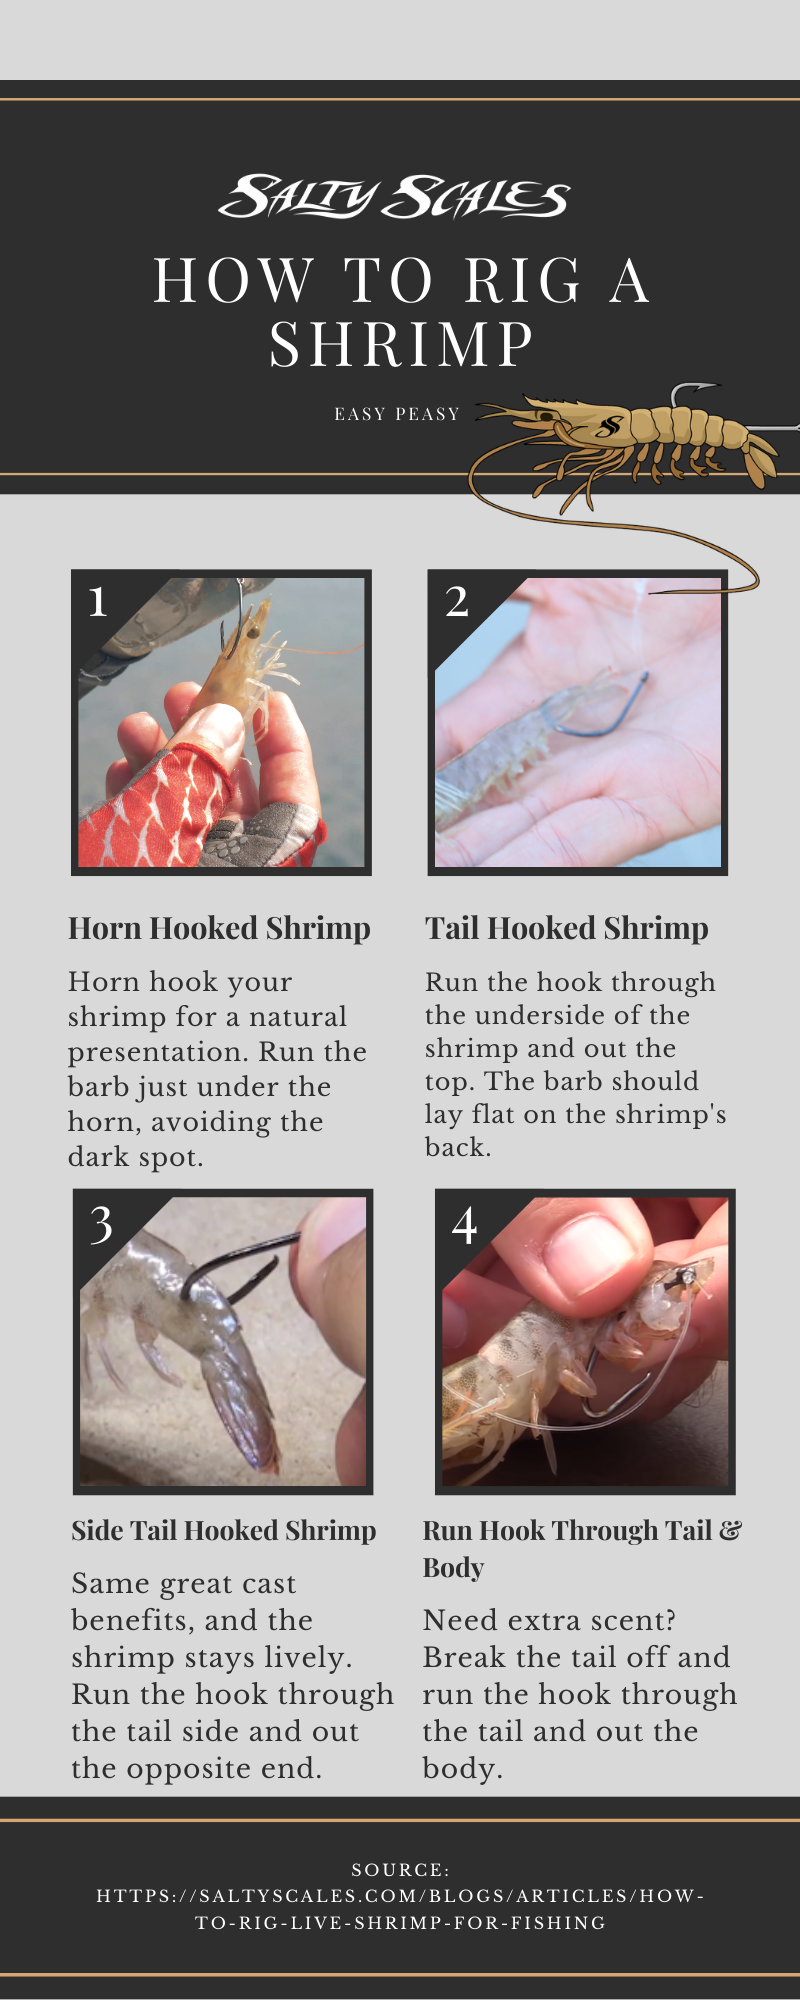 How to rig a shrimp infographic 